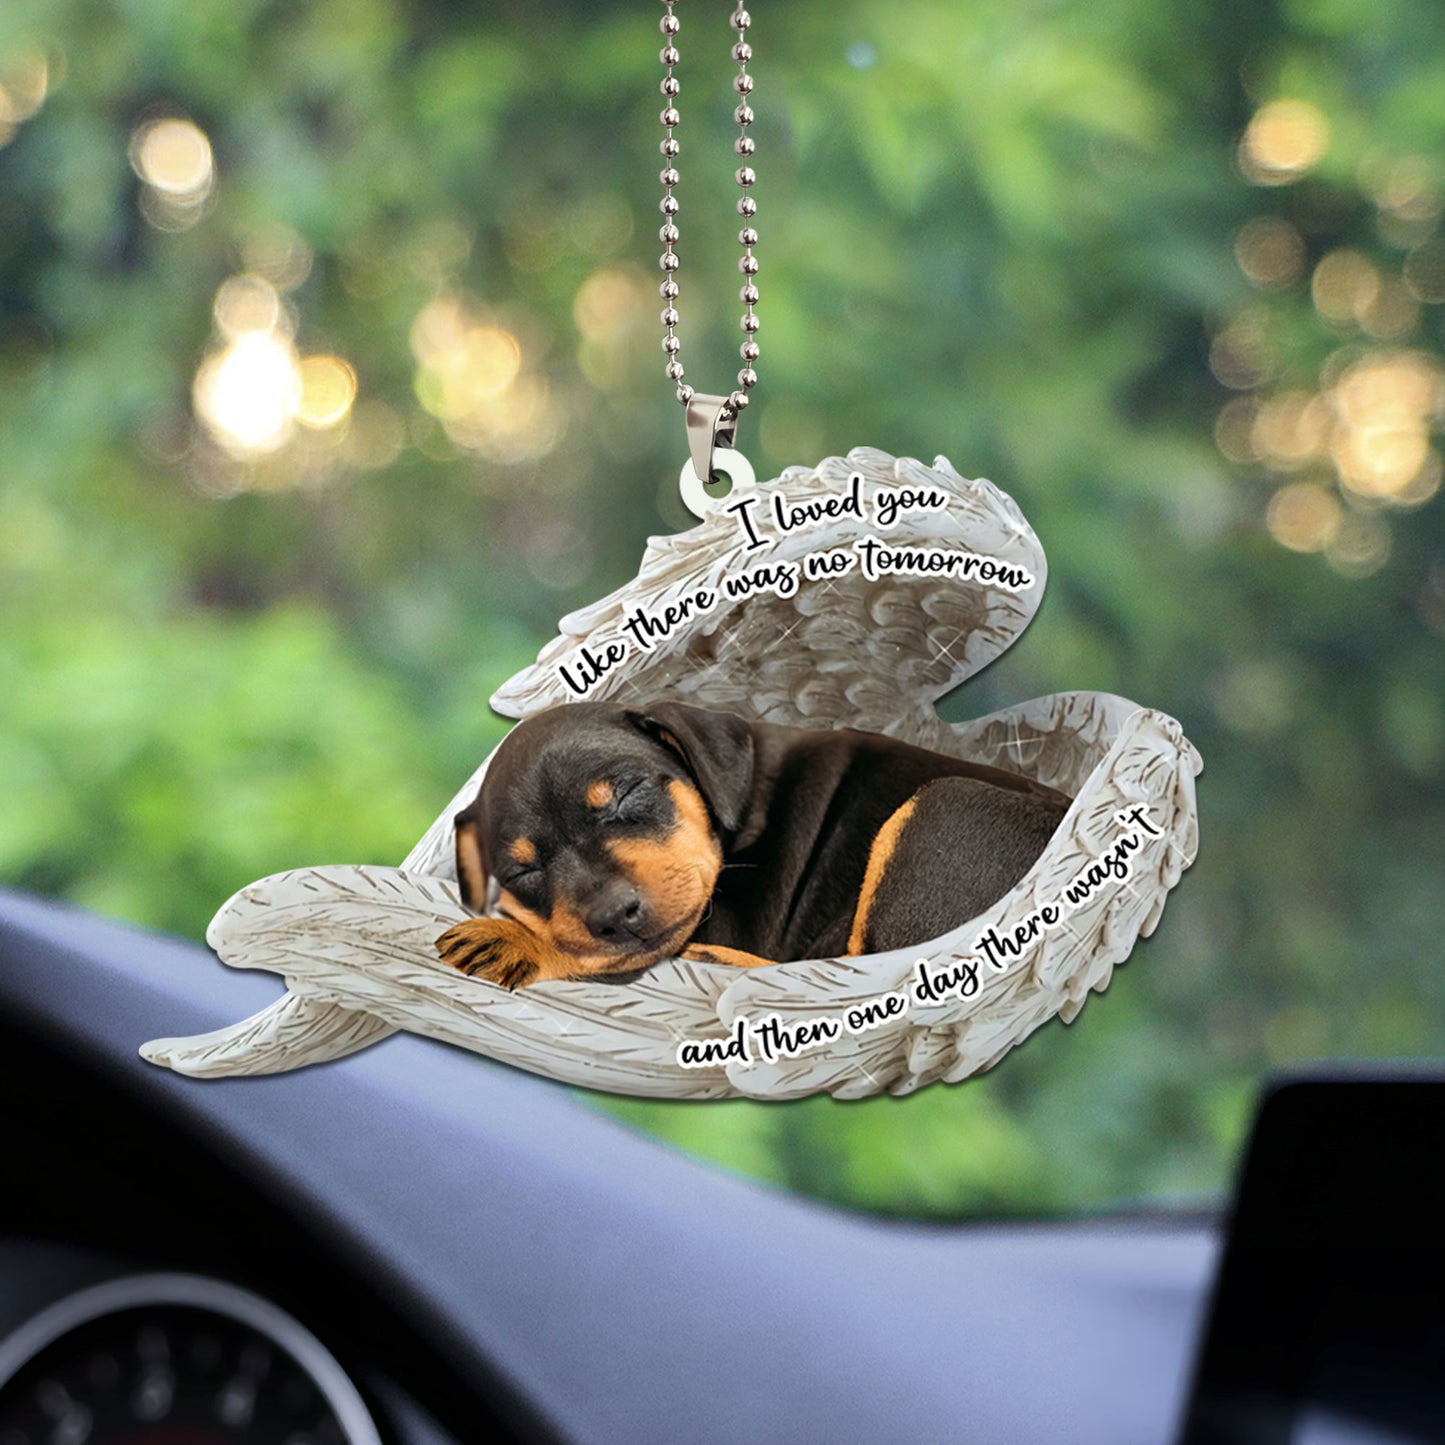 Miniature Pinscher Sleeping Angel Dog Personalizedwitch Flat Car Memorial Ornament